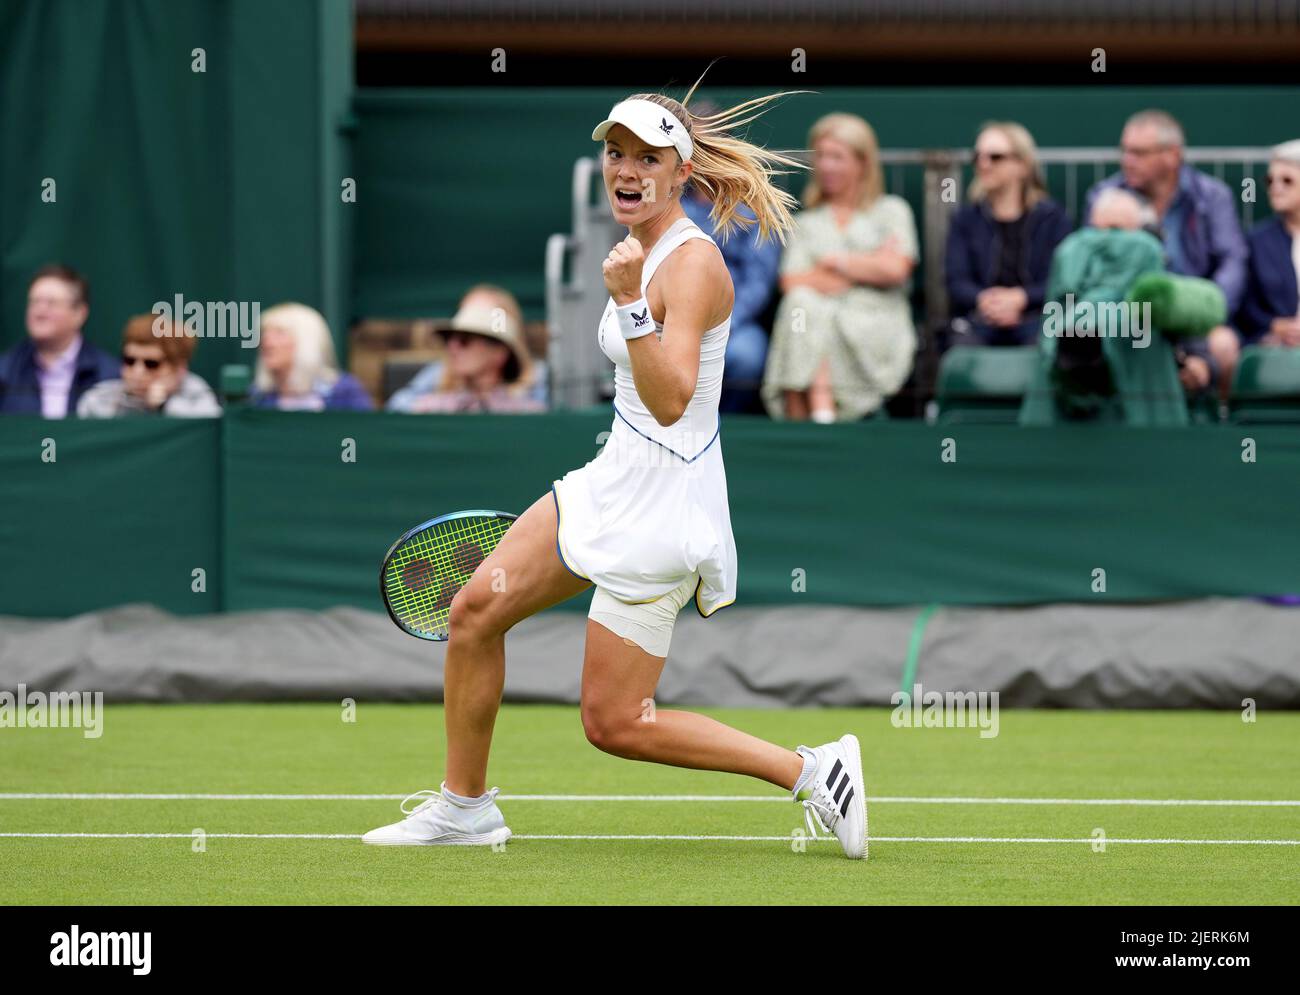 Katie Swan durante la sua partita contro Marta Kostyuk il secondo giorno dei campionati di Wimbledon 2022 all'All England Lawn Tennis and Croquet Club, Wimbledon. Data foto: Martedì 28 giugno 2022. Foto Stock